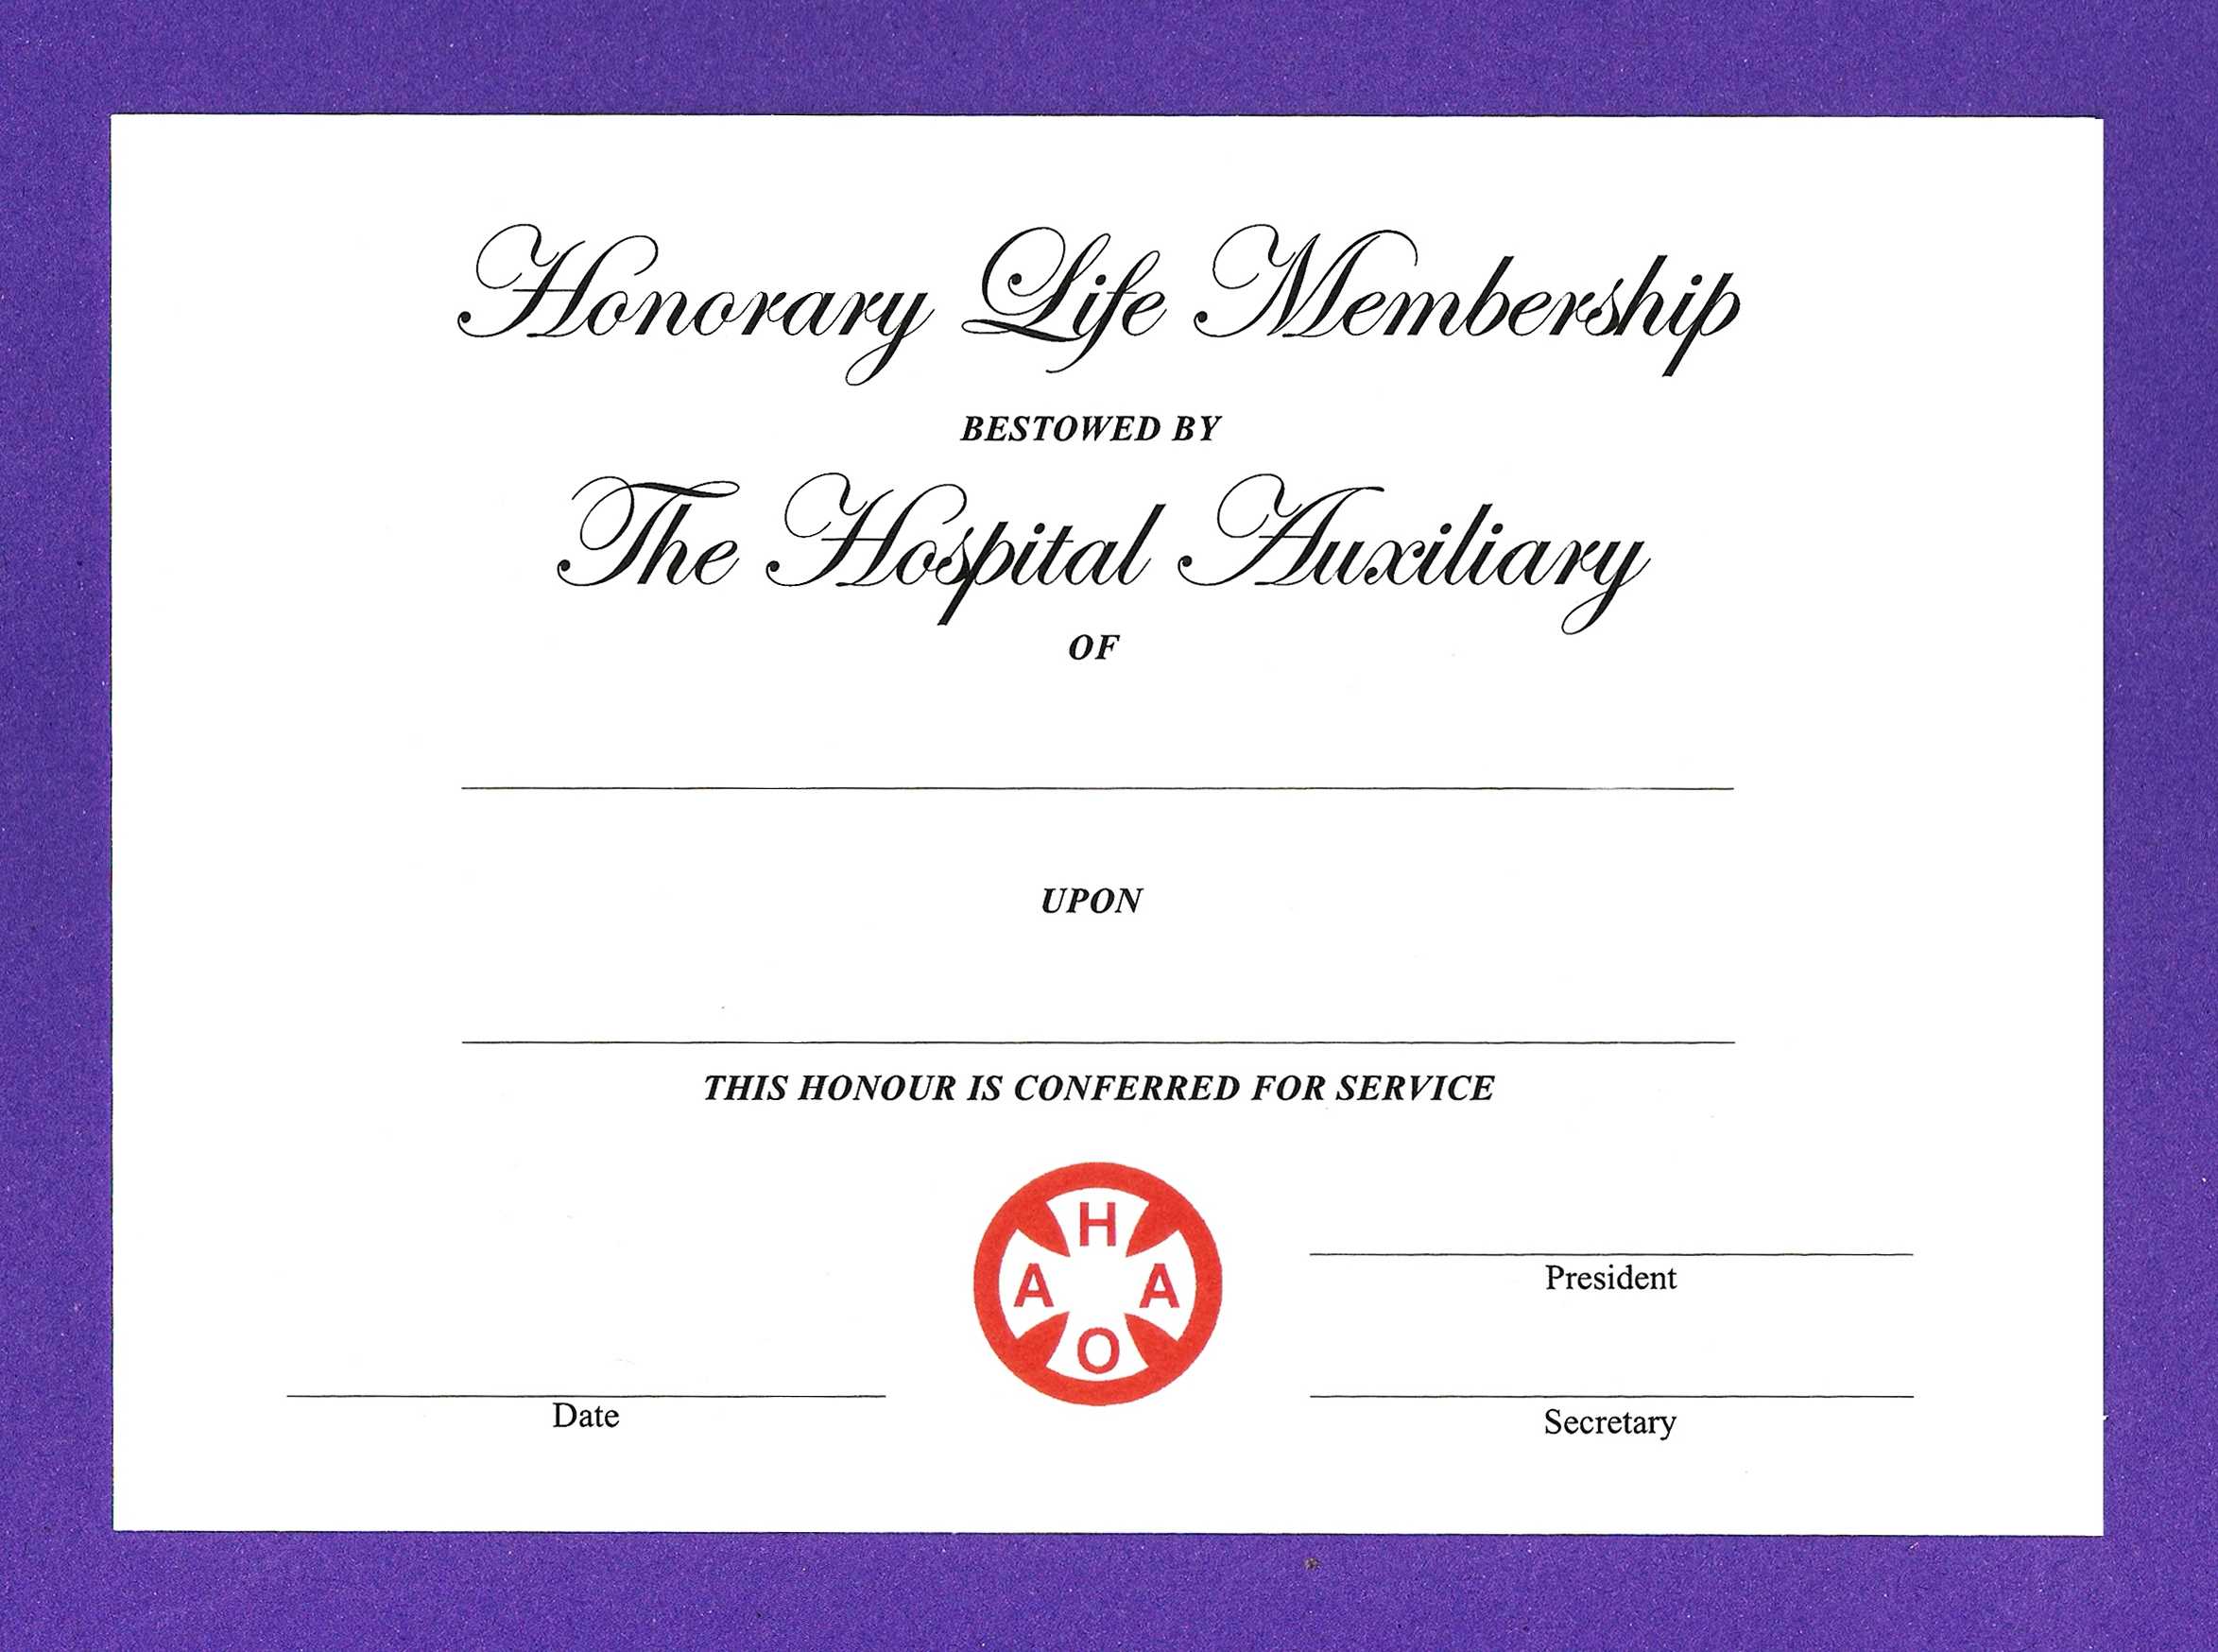 Honorary Membership Certificate Template – Calep.midnightpig.co With Life Membership Certificate Templates